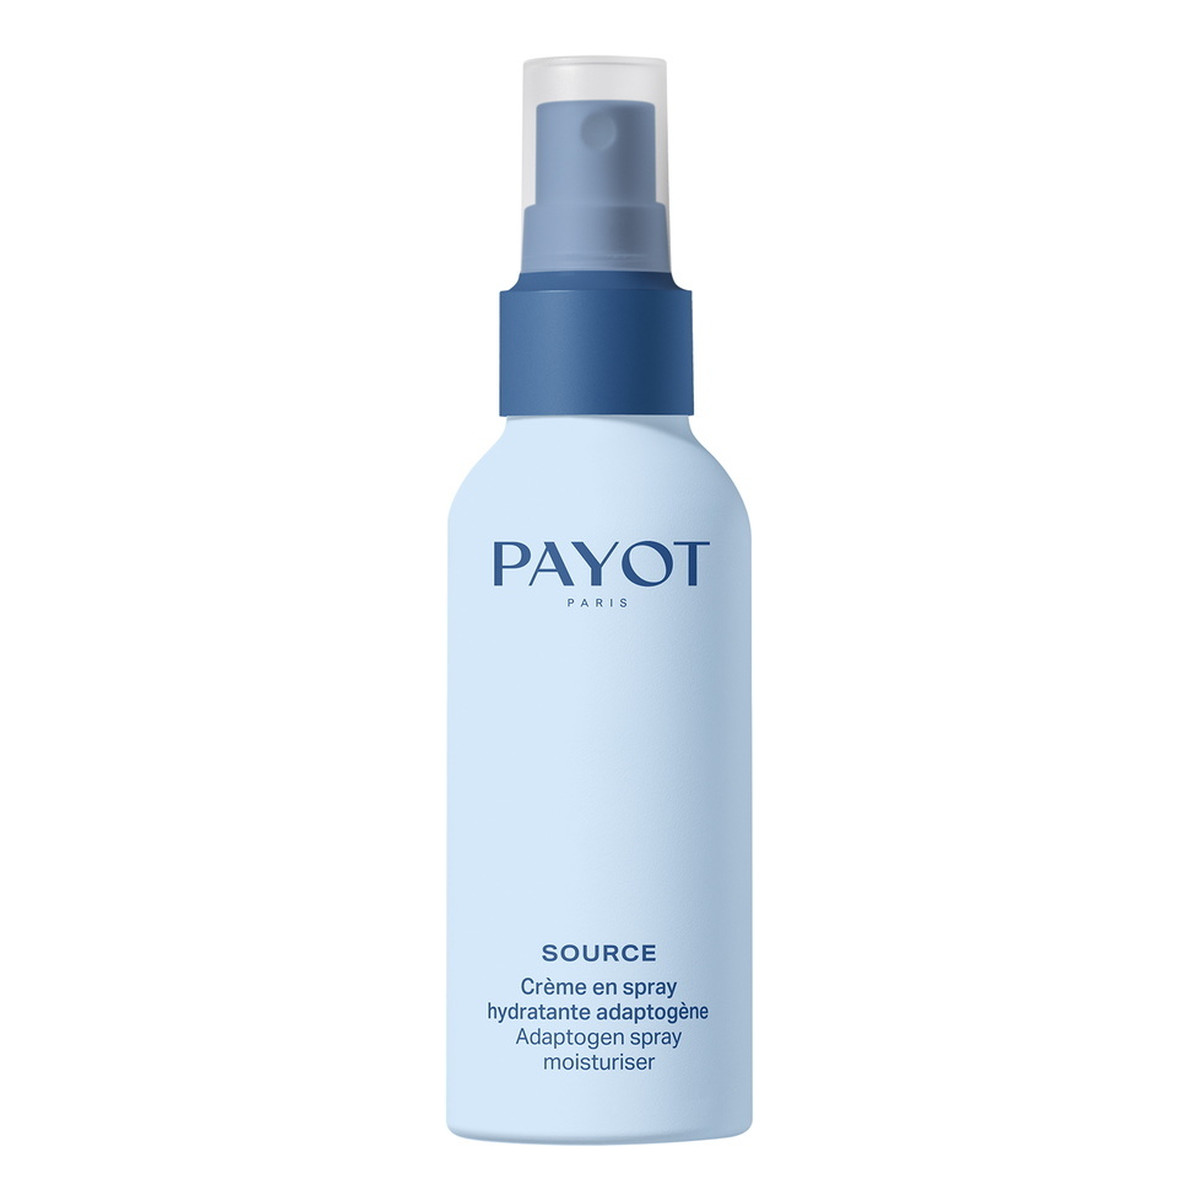 Payot Source adaptogen spray moisturiser nawilżający spray do twarzy 40ml